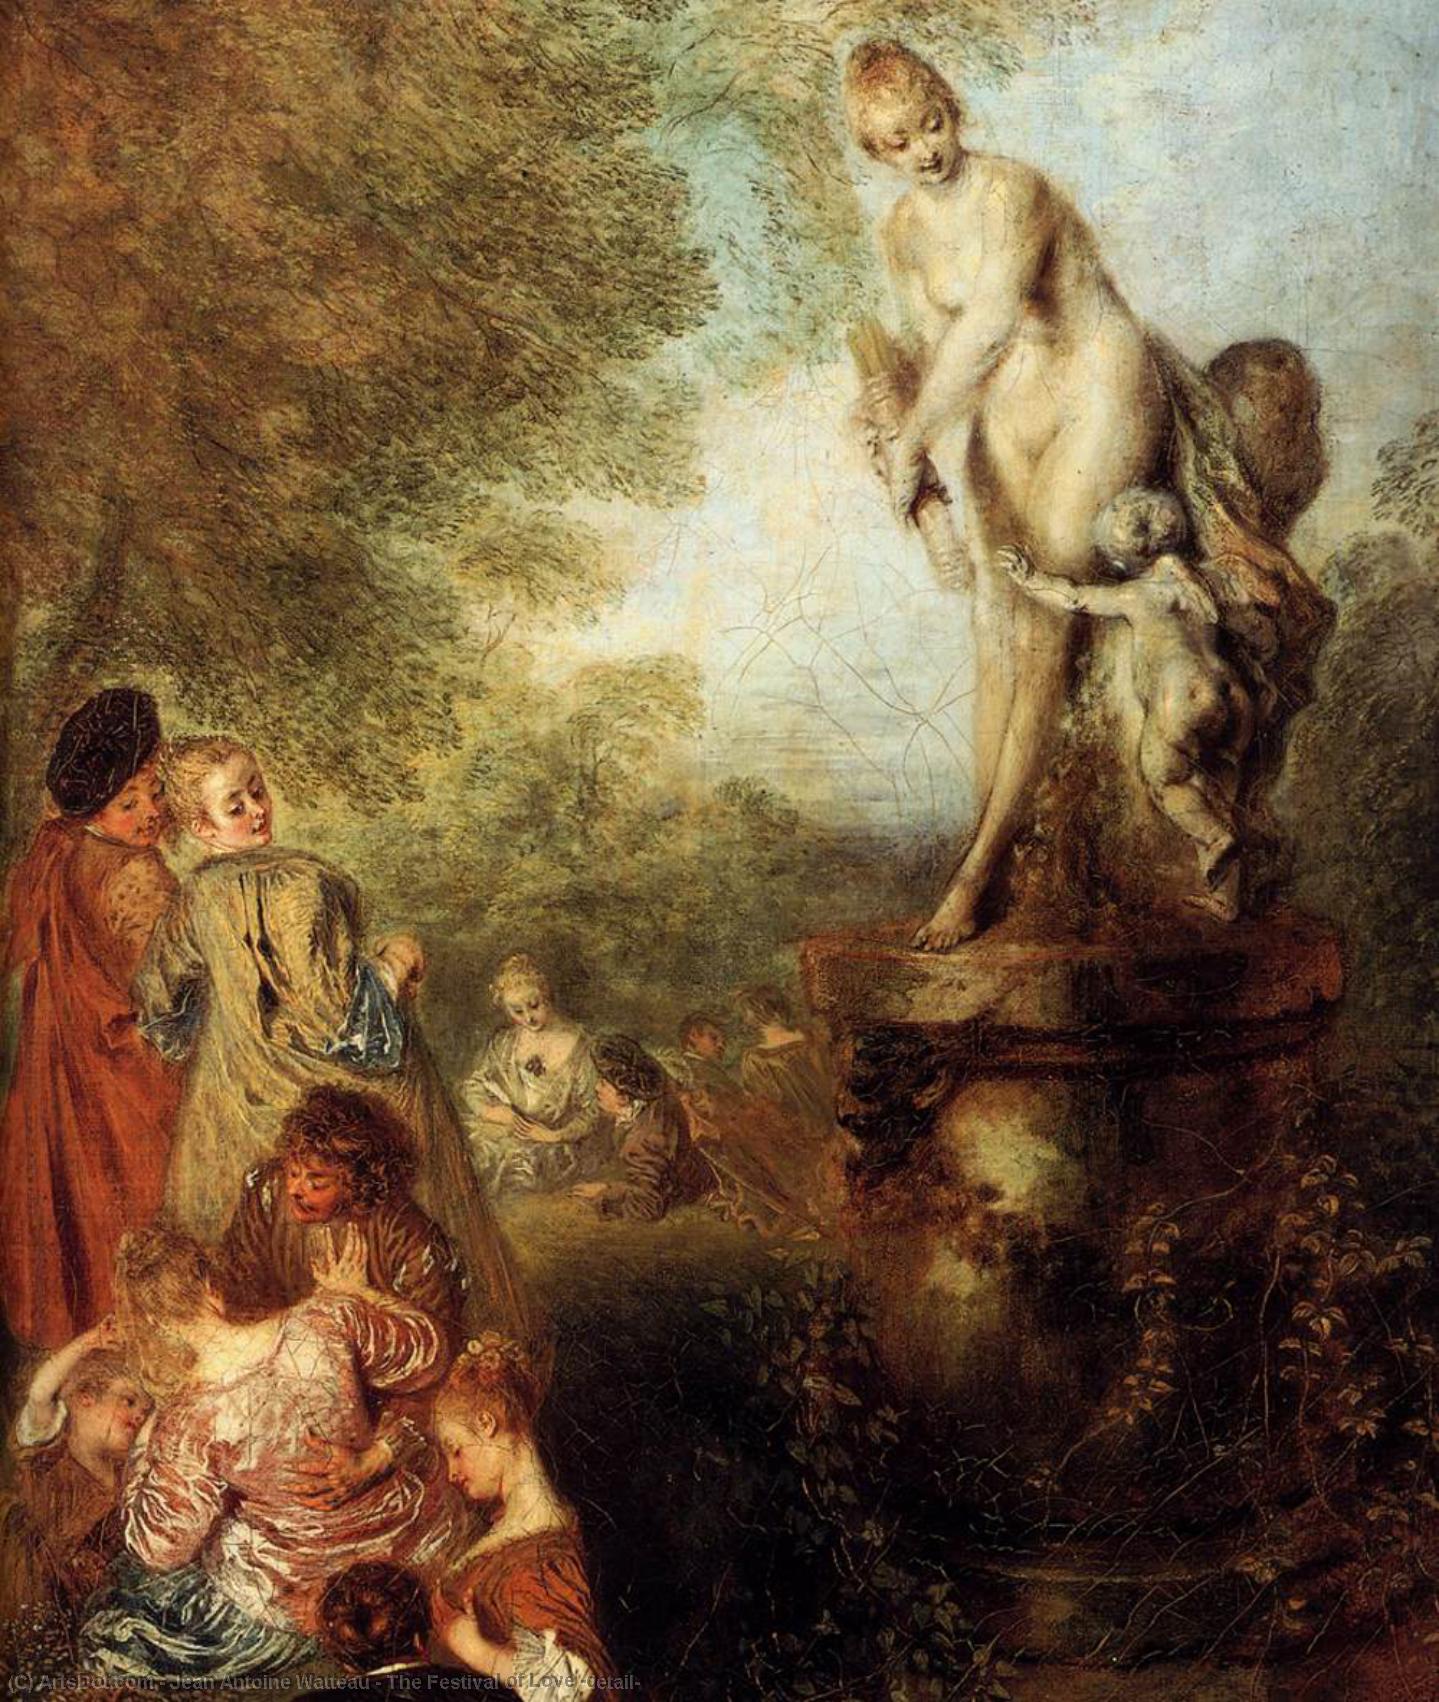 WikiOO.org - Encyclopedia of Fine Arts - Lukisan, Artwork Jean Antoine Watteau - The Festival of Love (detail)